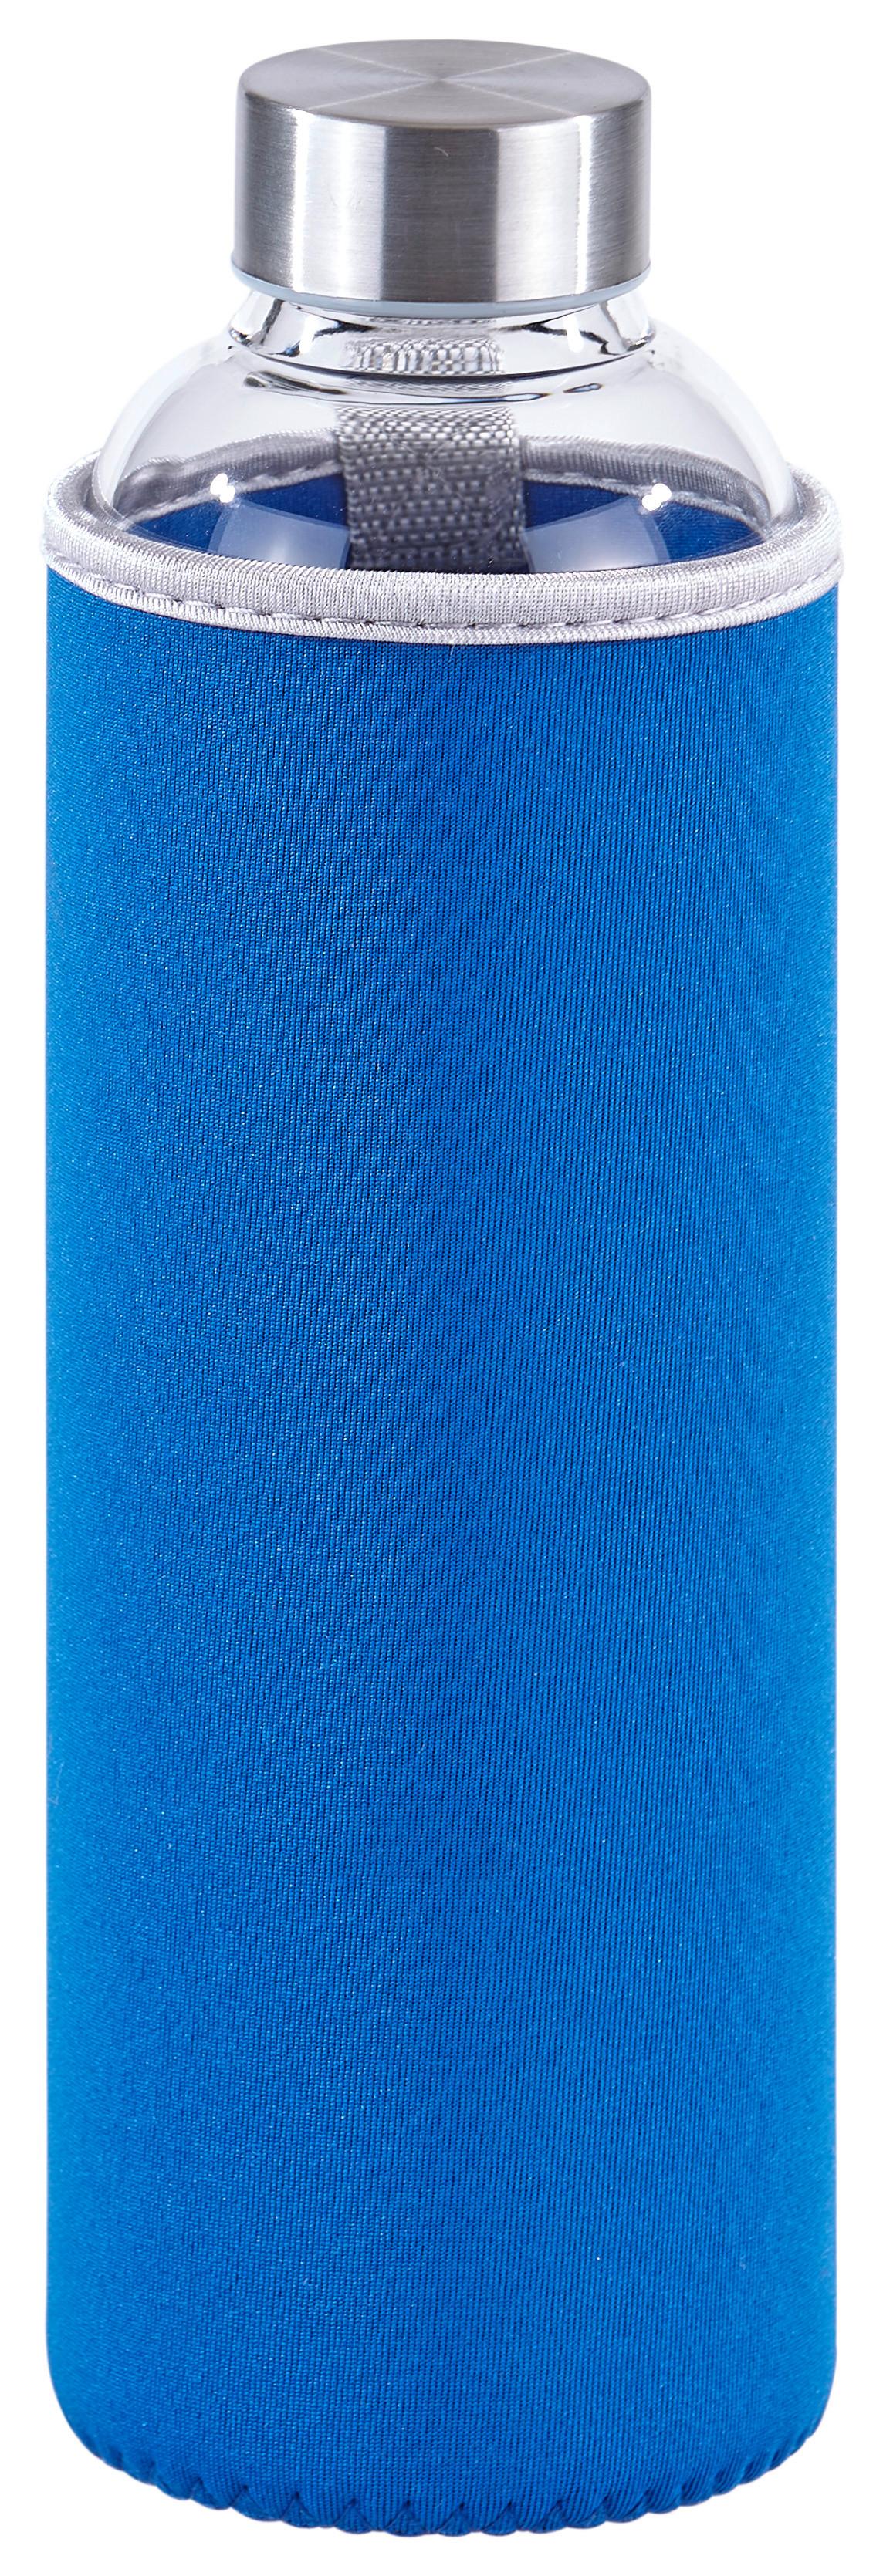 Trinkflasche Thorsten, ca. 800 ml - Blau/Klar, MODERN, Glas/Kunststoff (7,5/24,5cm) - Luca Bessoni